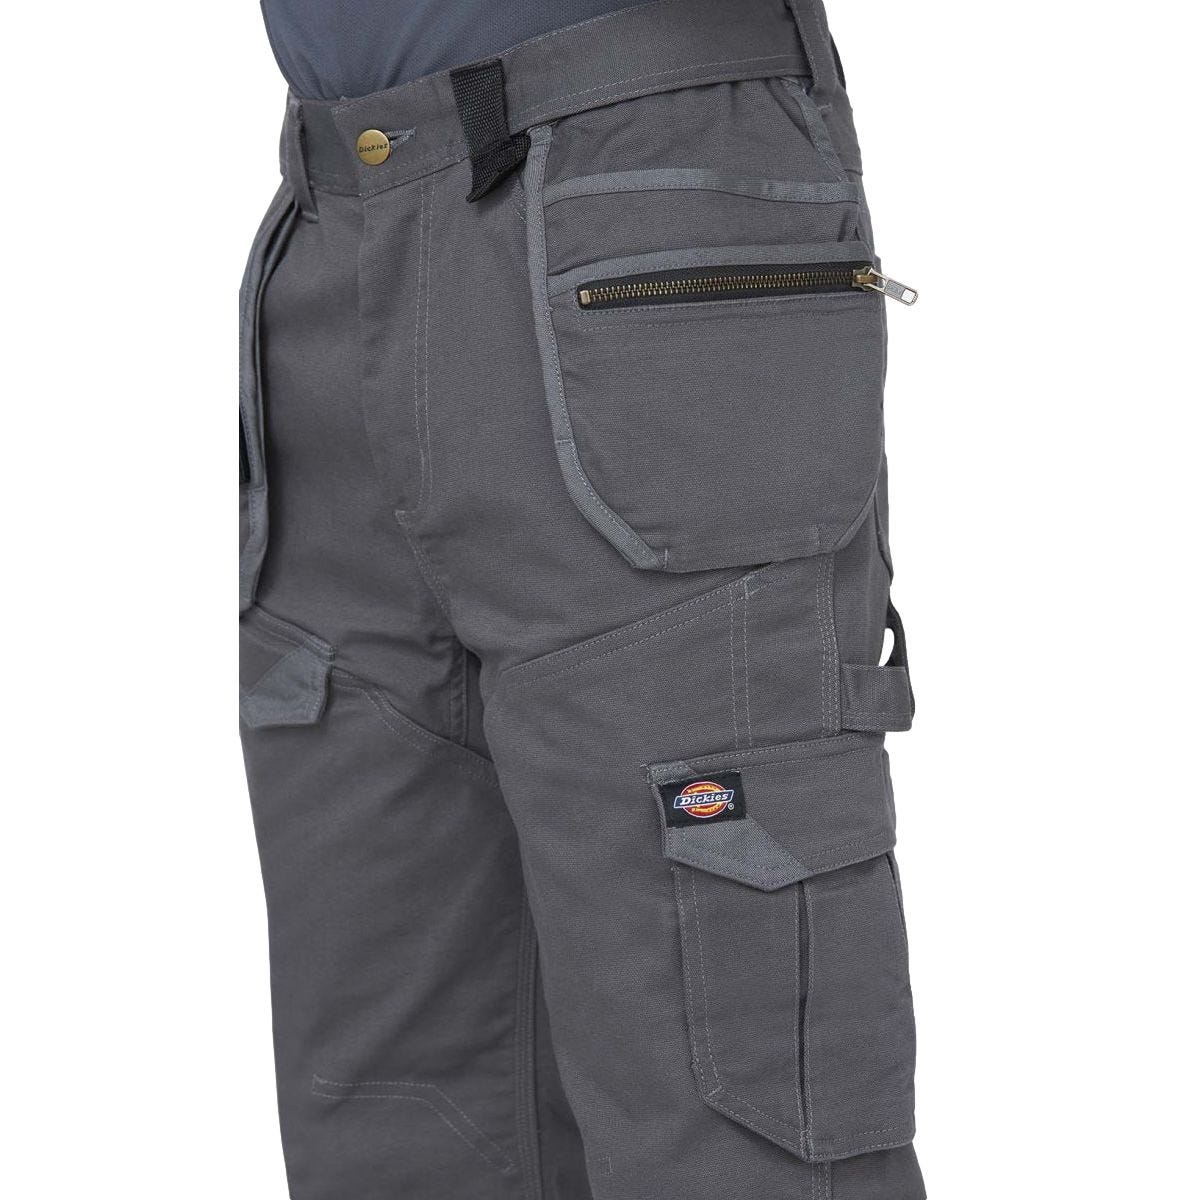 Pantalon Universal Flex Gris et noir - Dickies - Taille 44 1